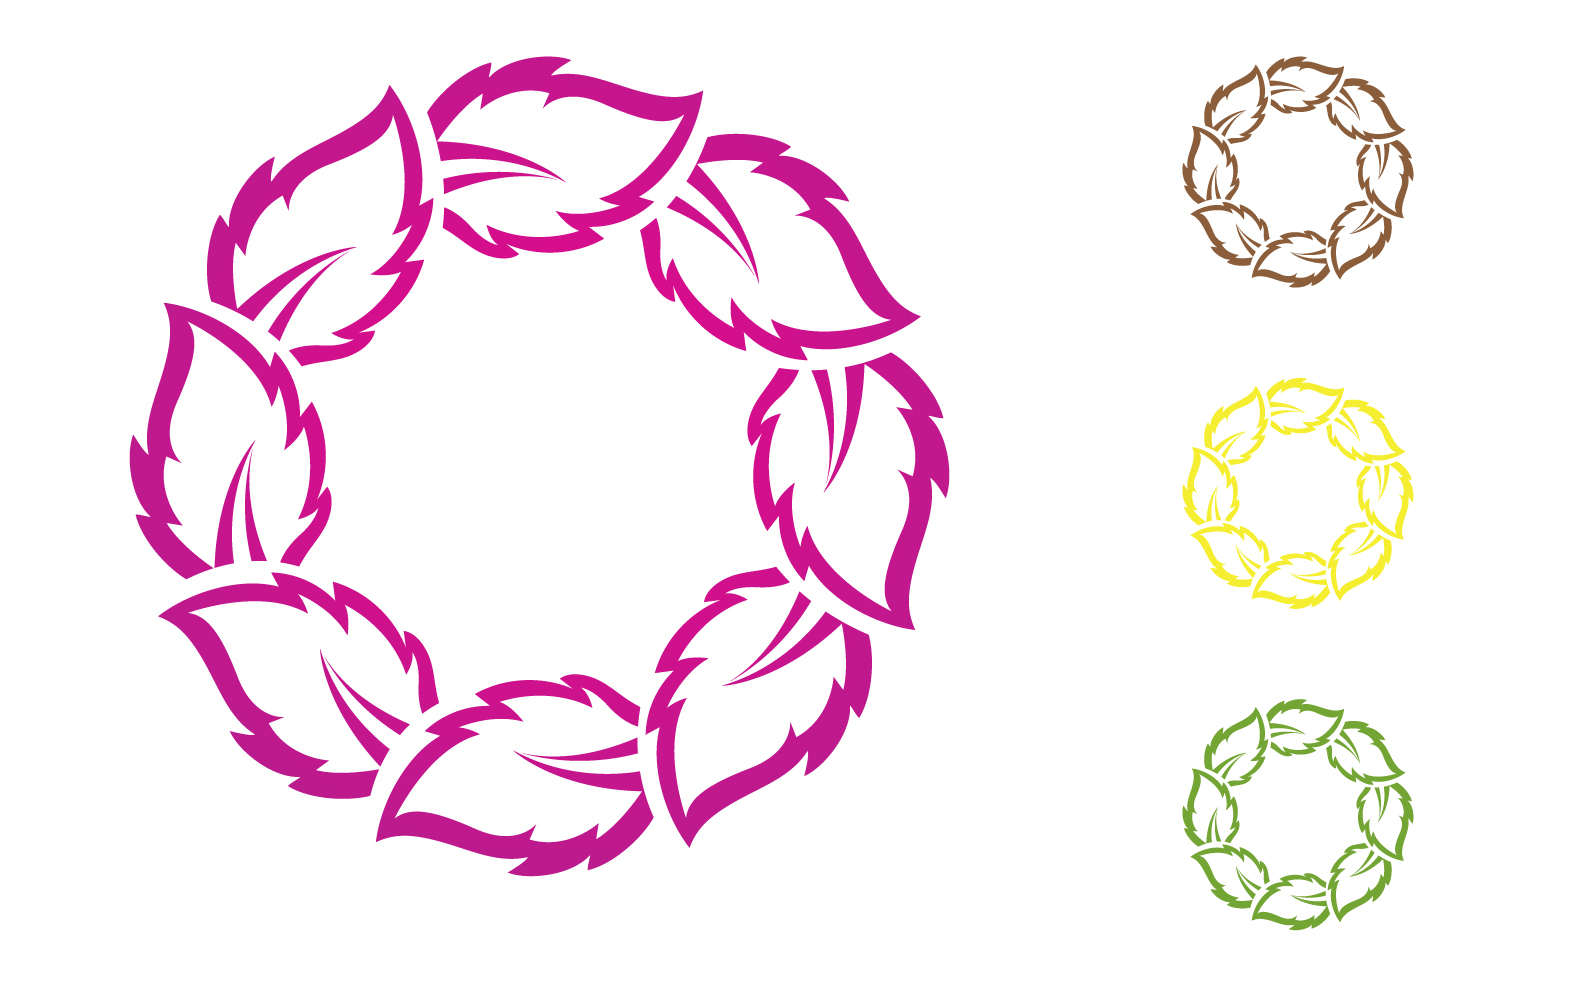 Flower leaf circle decoration or logo nature v9